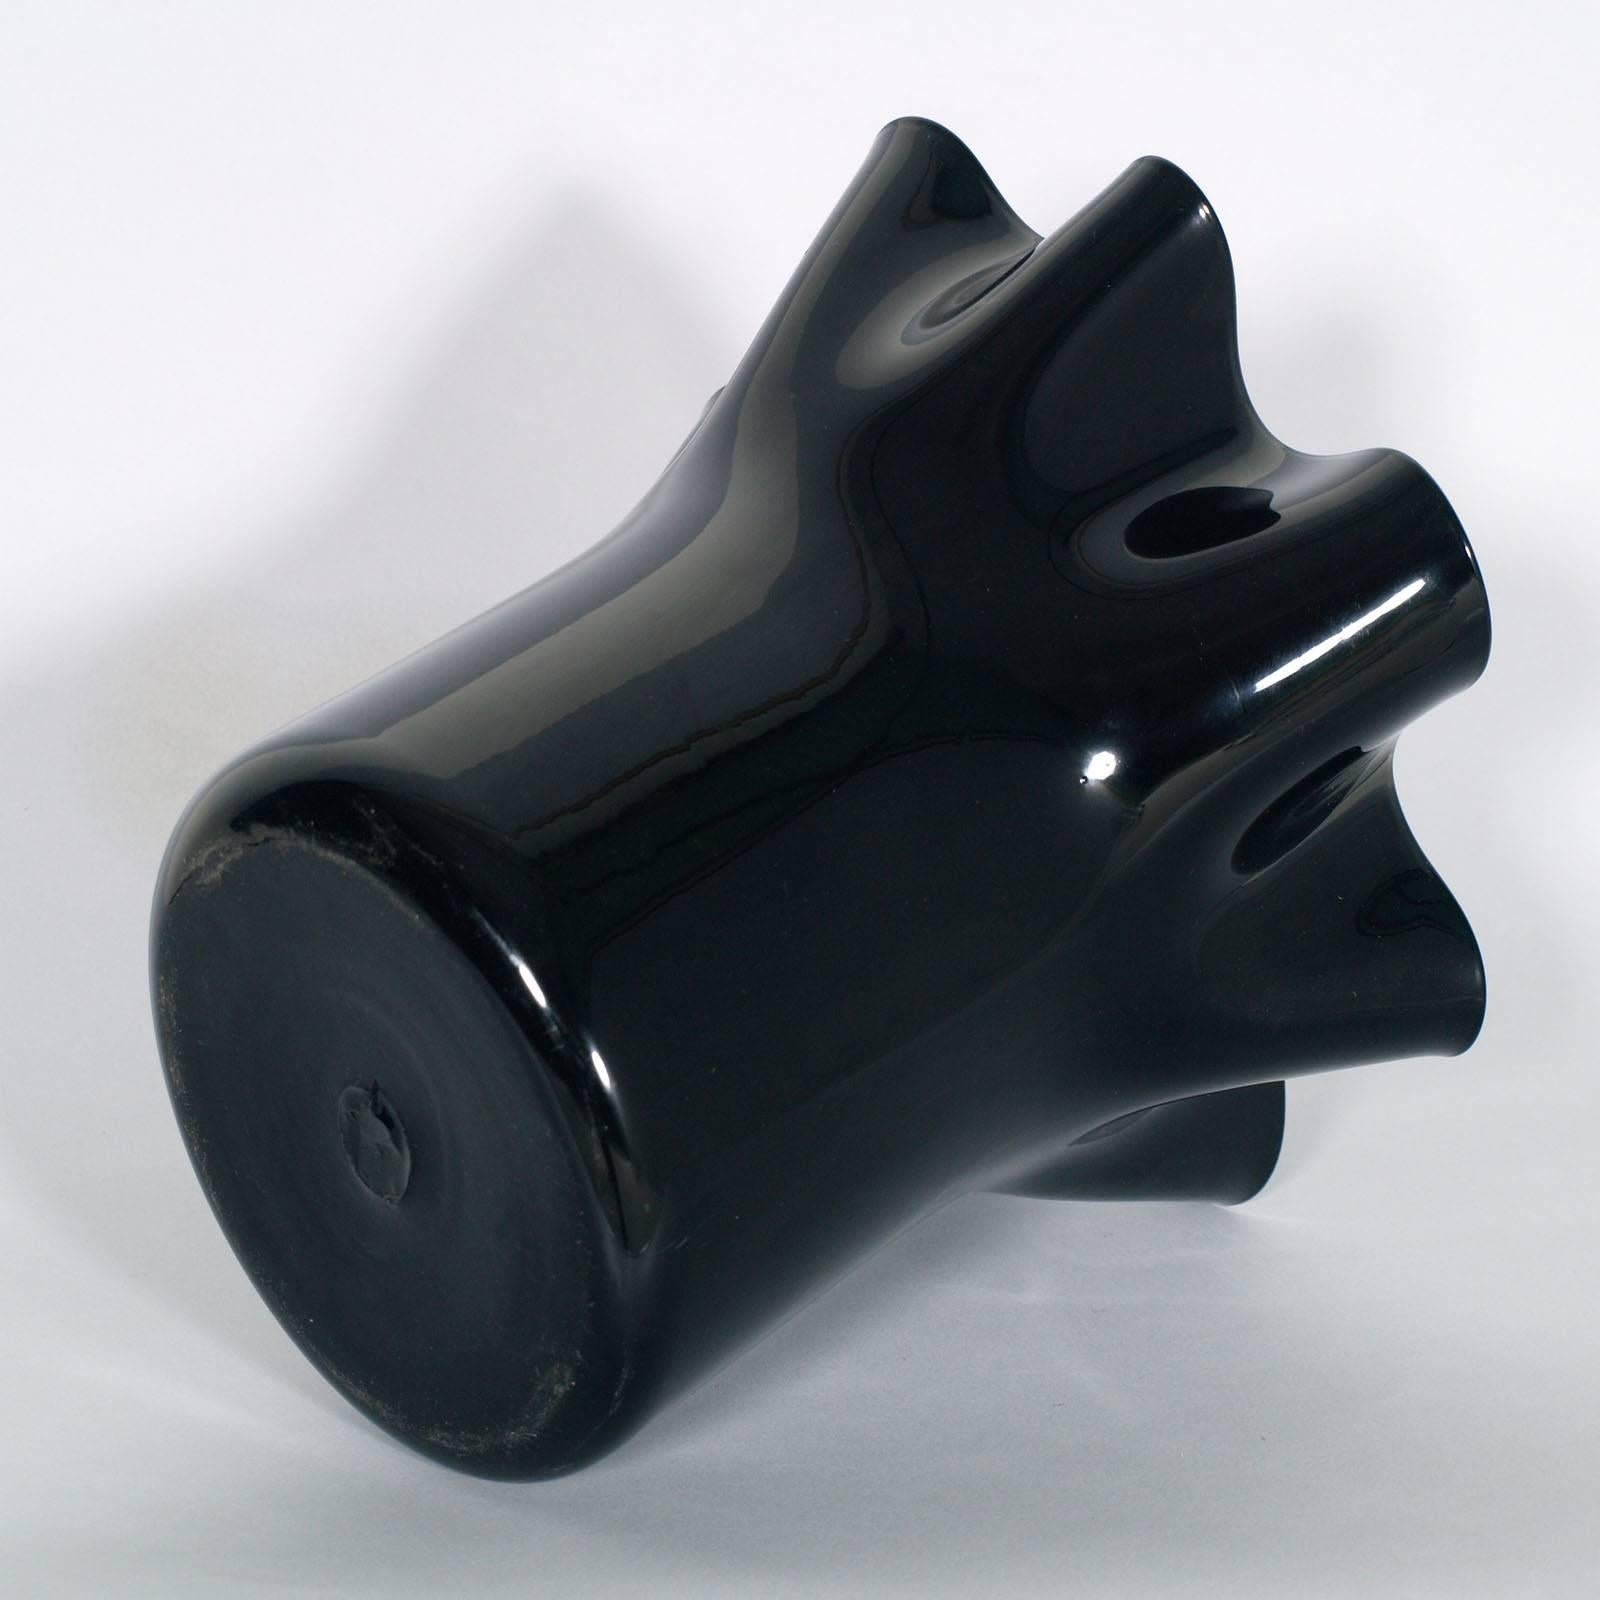 Vase noir style Sergio Asti pour Venini en verre soufflé de Murano, vers les années 1960.

Mesure cm : H 28 Diamètre 30.